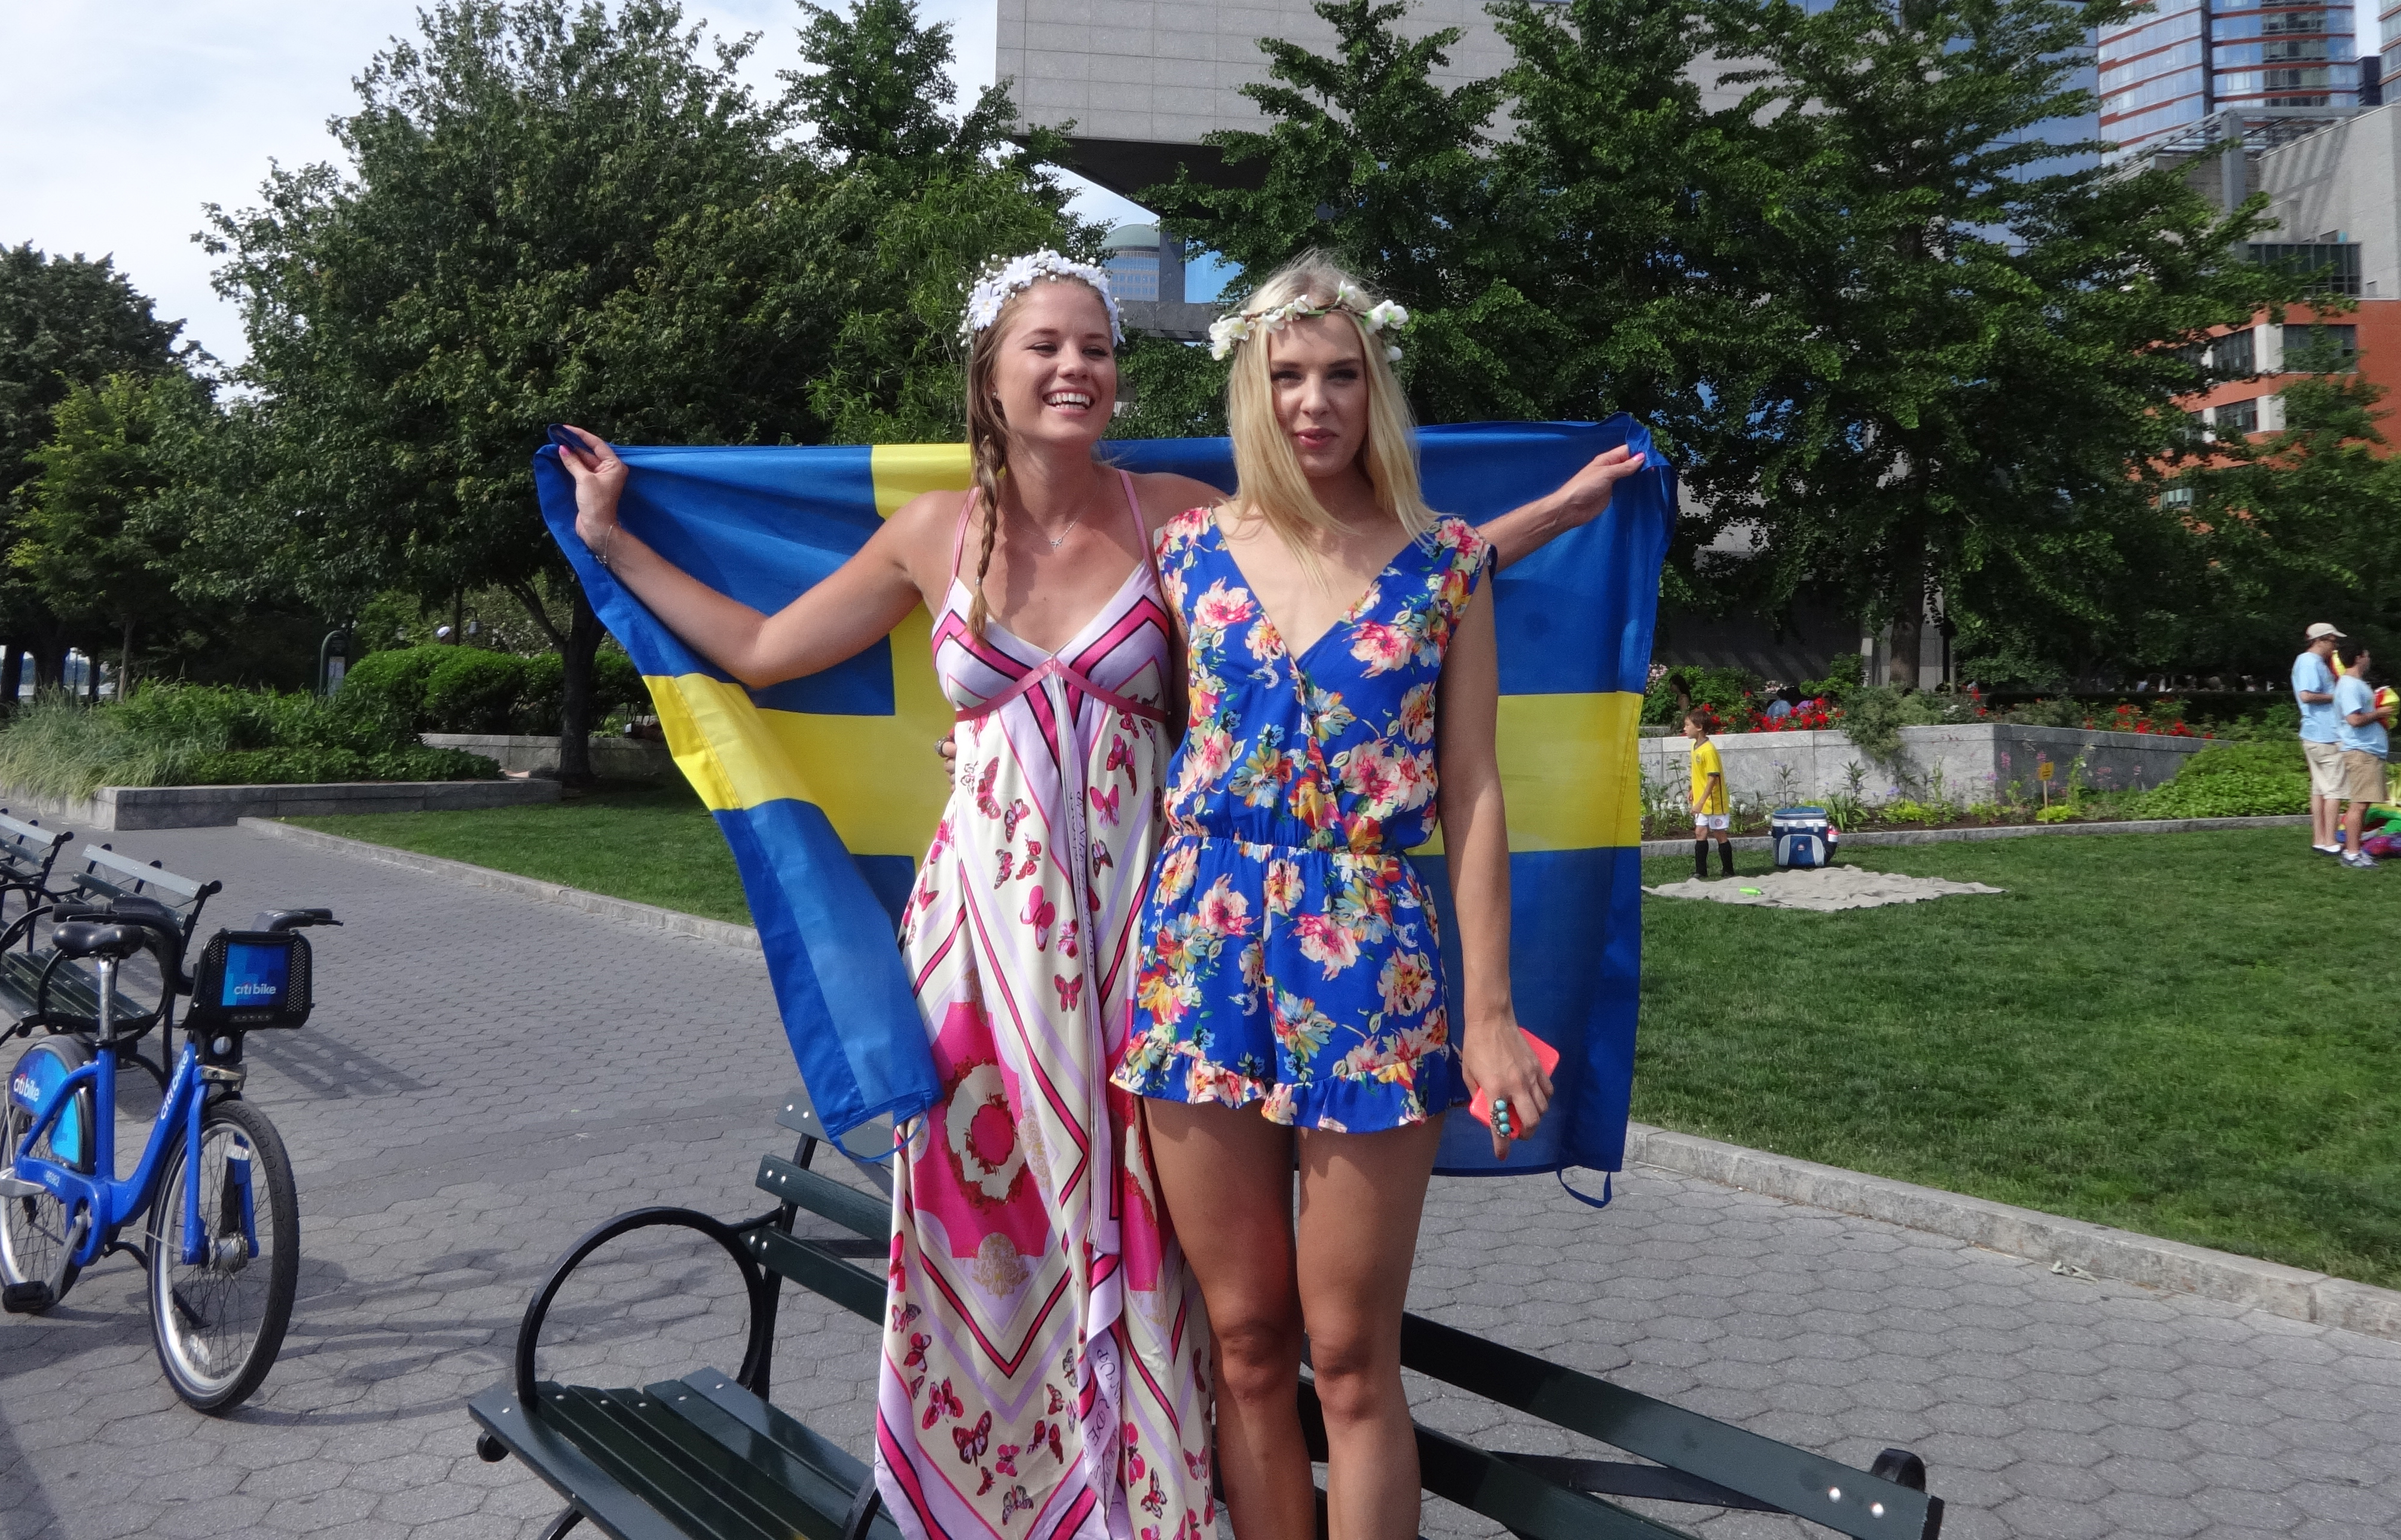 Swedish girls pair